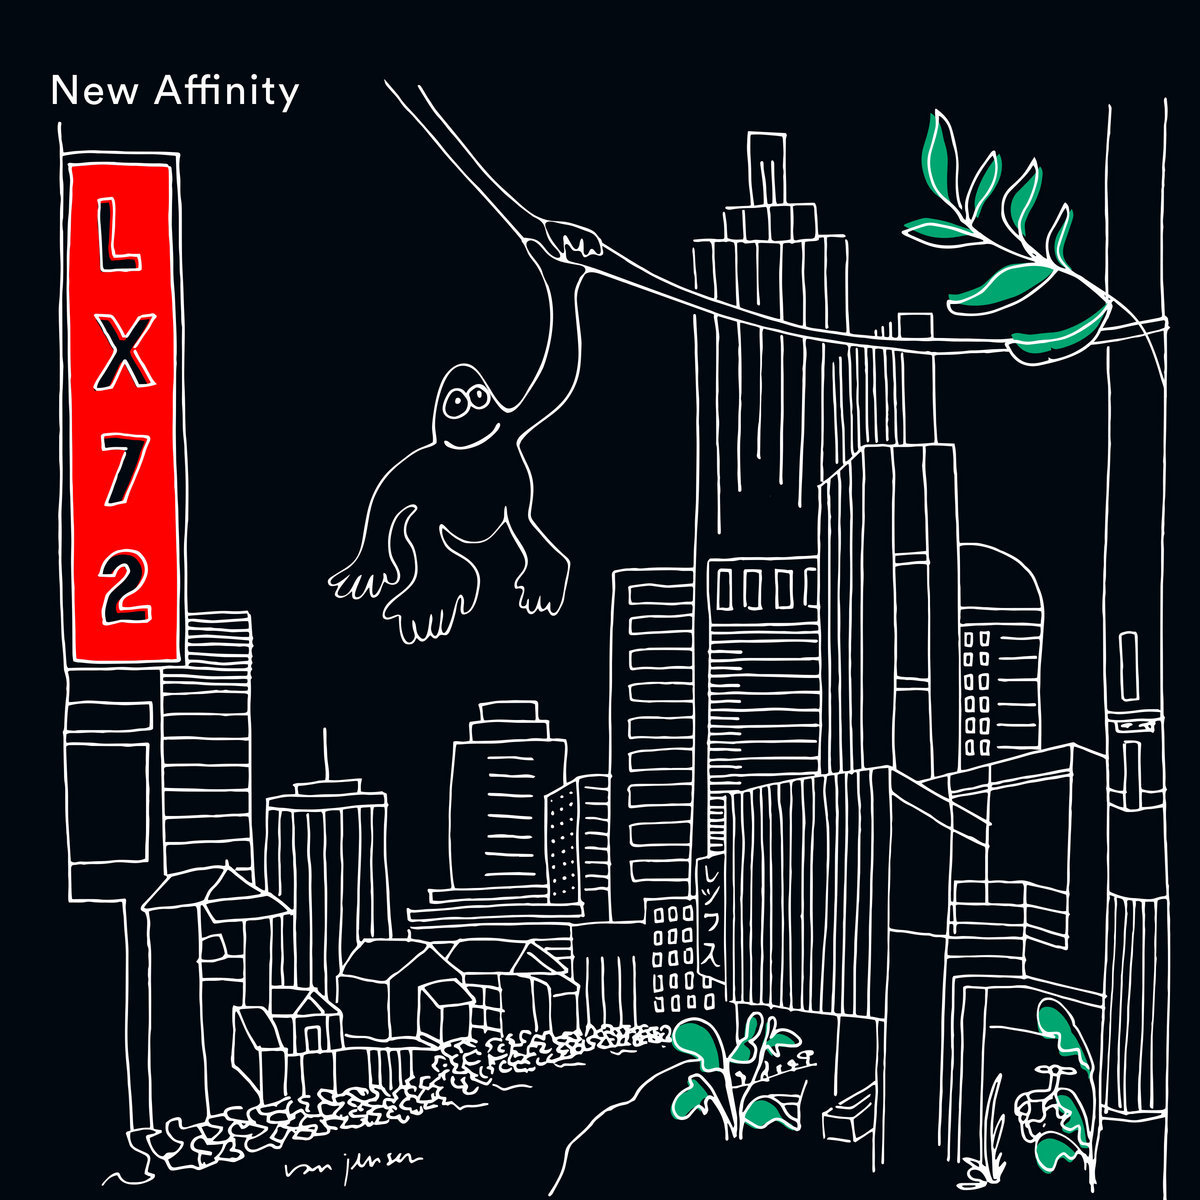 Lexx - New Affinity